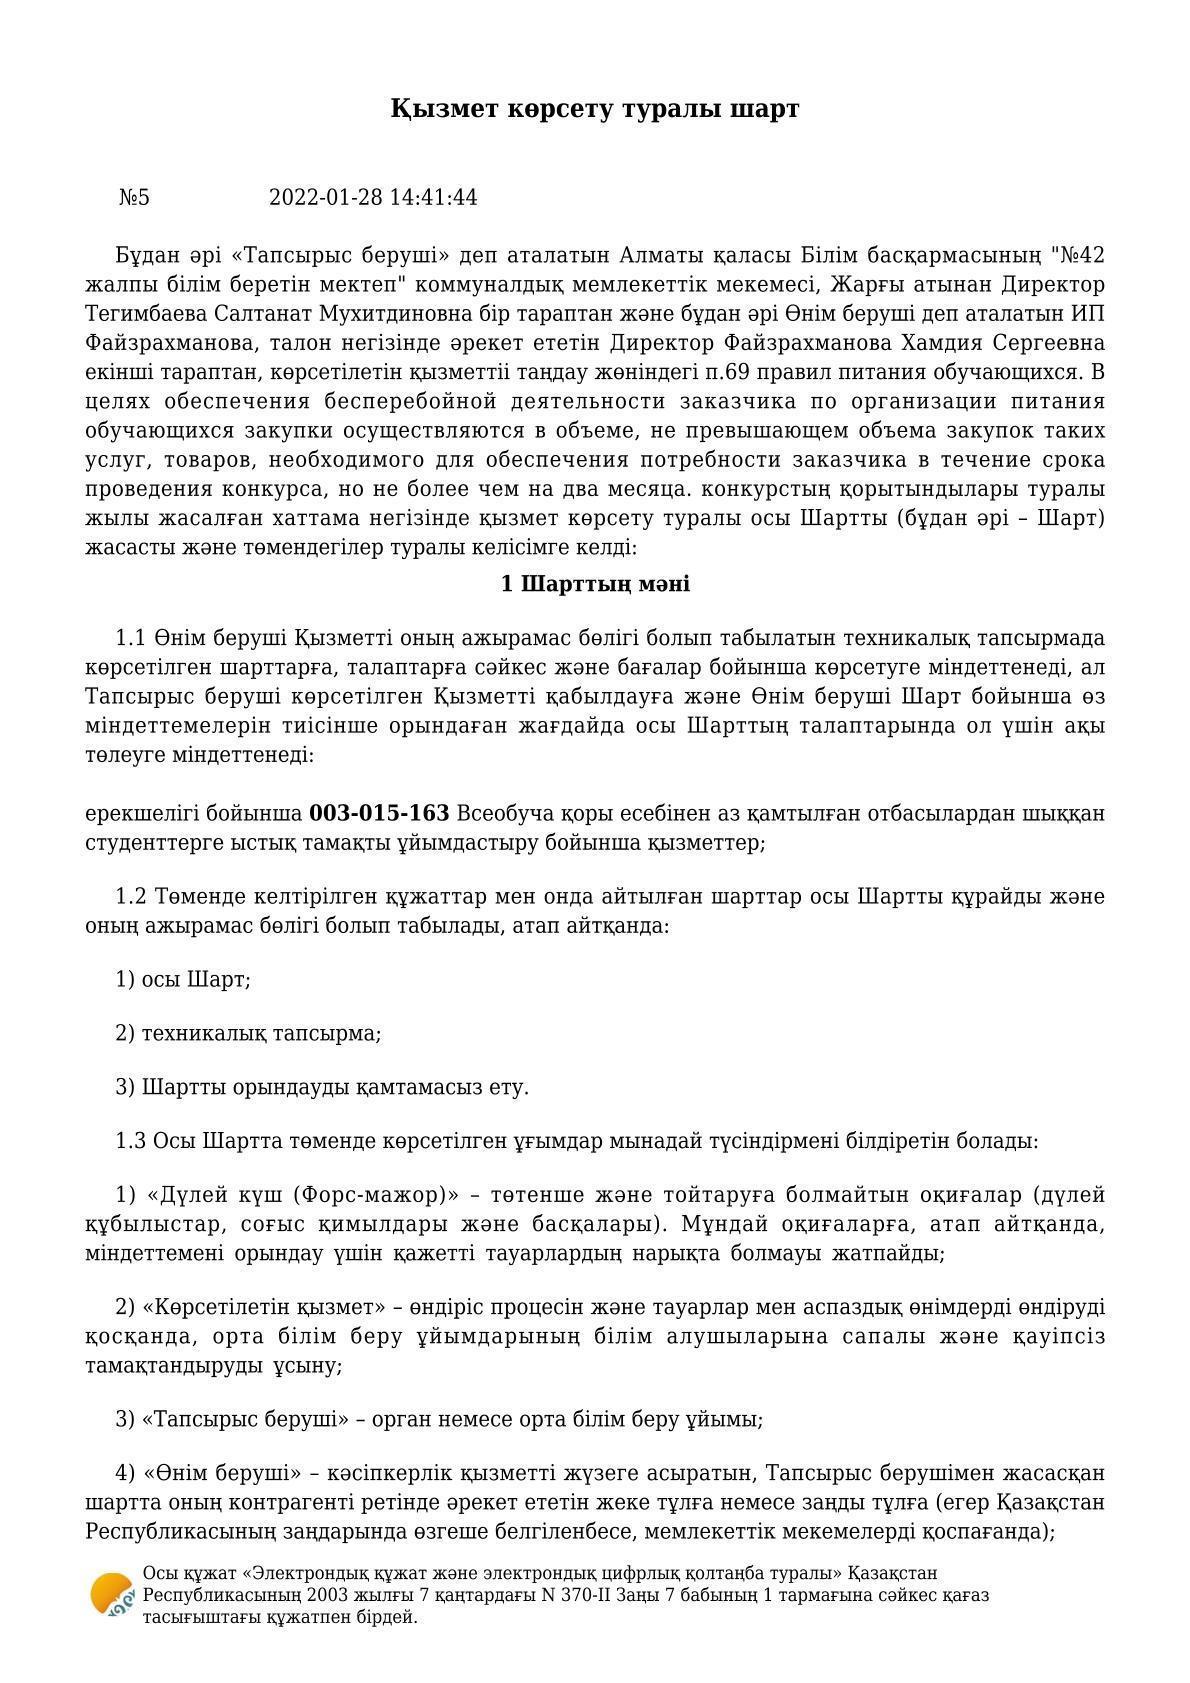 №5 Қызмет көрсету туралы шарт. 28.01.2022 жыл.